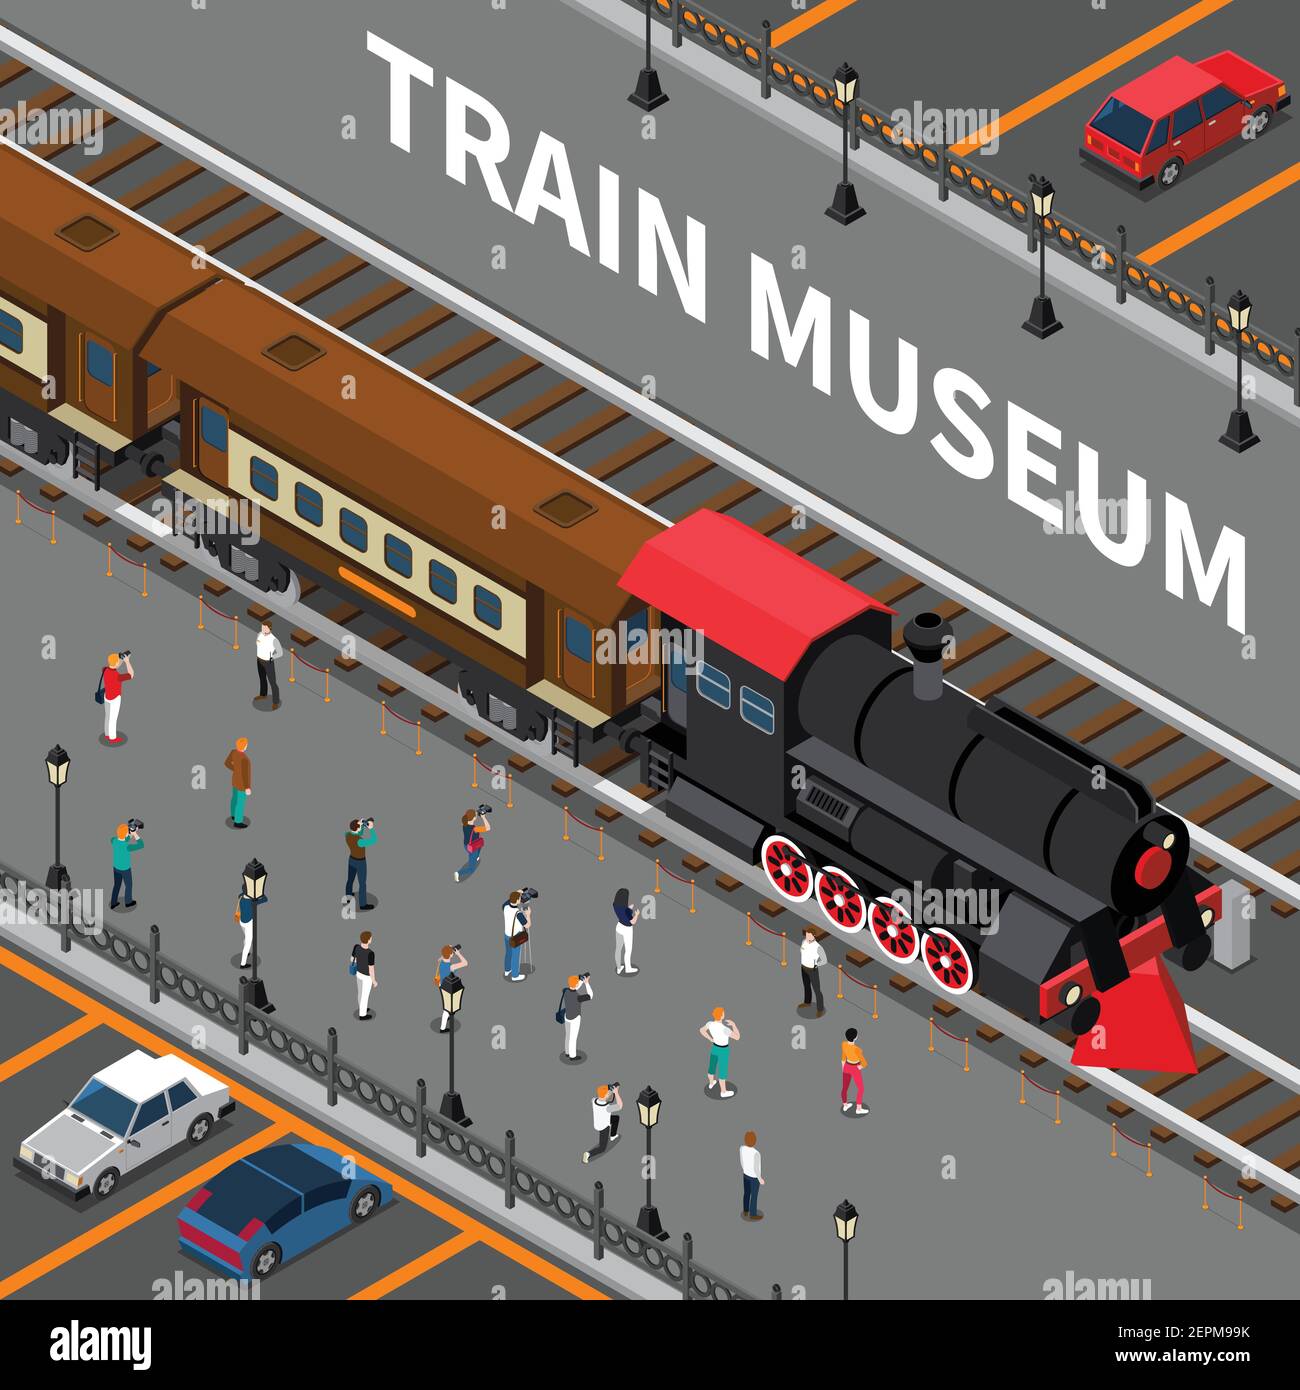 Train musée composition isométrique avec la locomotive rétro rouge noir et les vieilles voitures, les touristes pendant la photographie illustration de vecteur Illustration de Vecteur